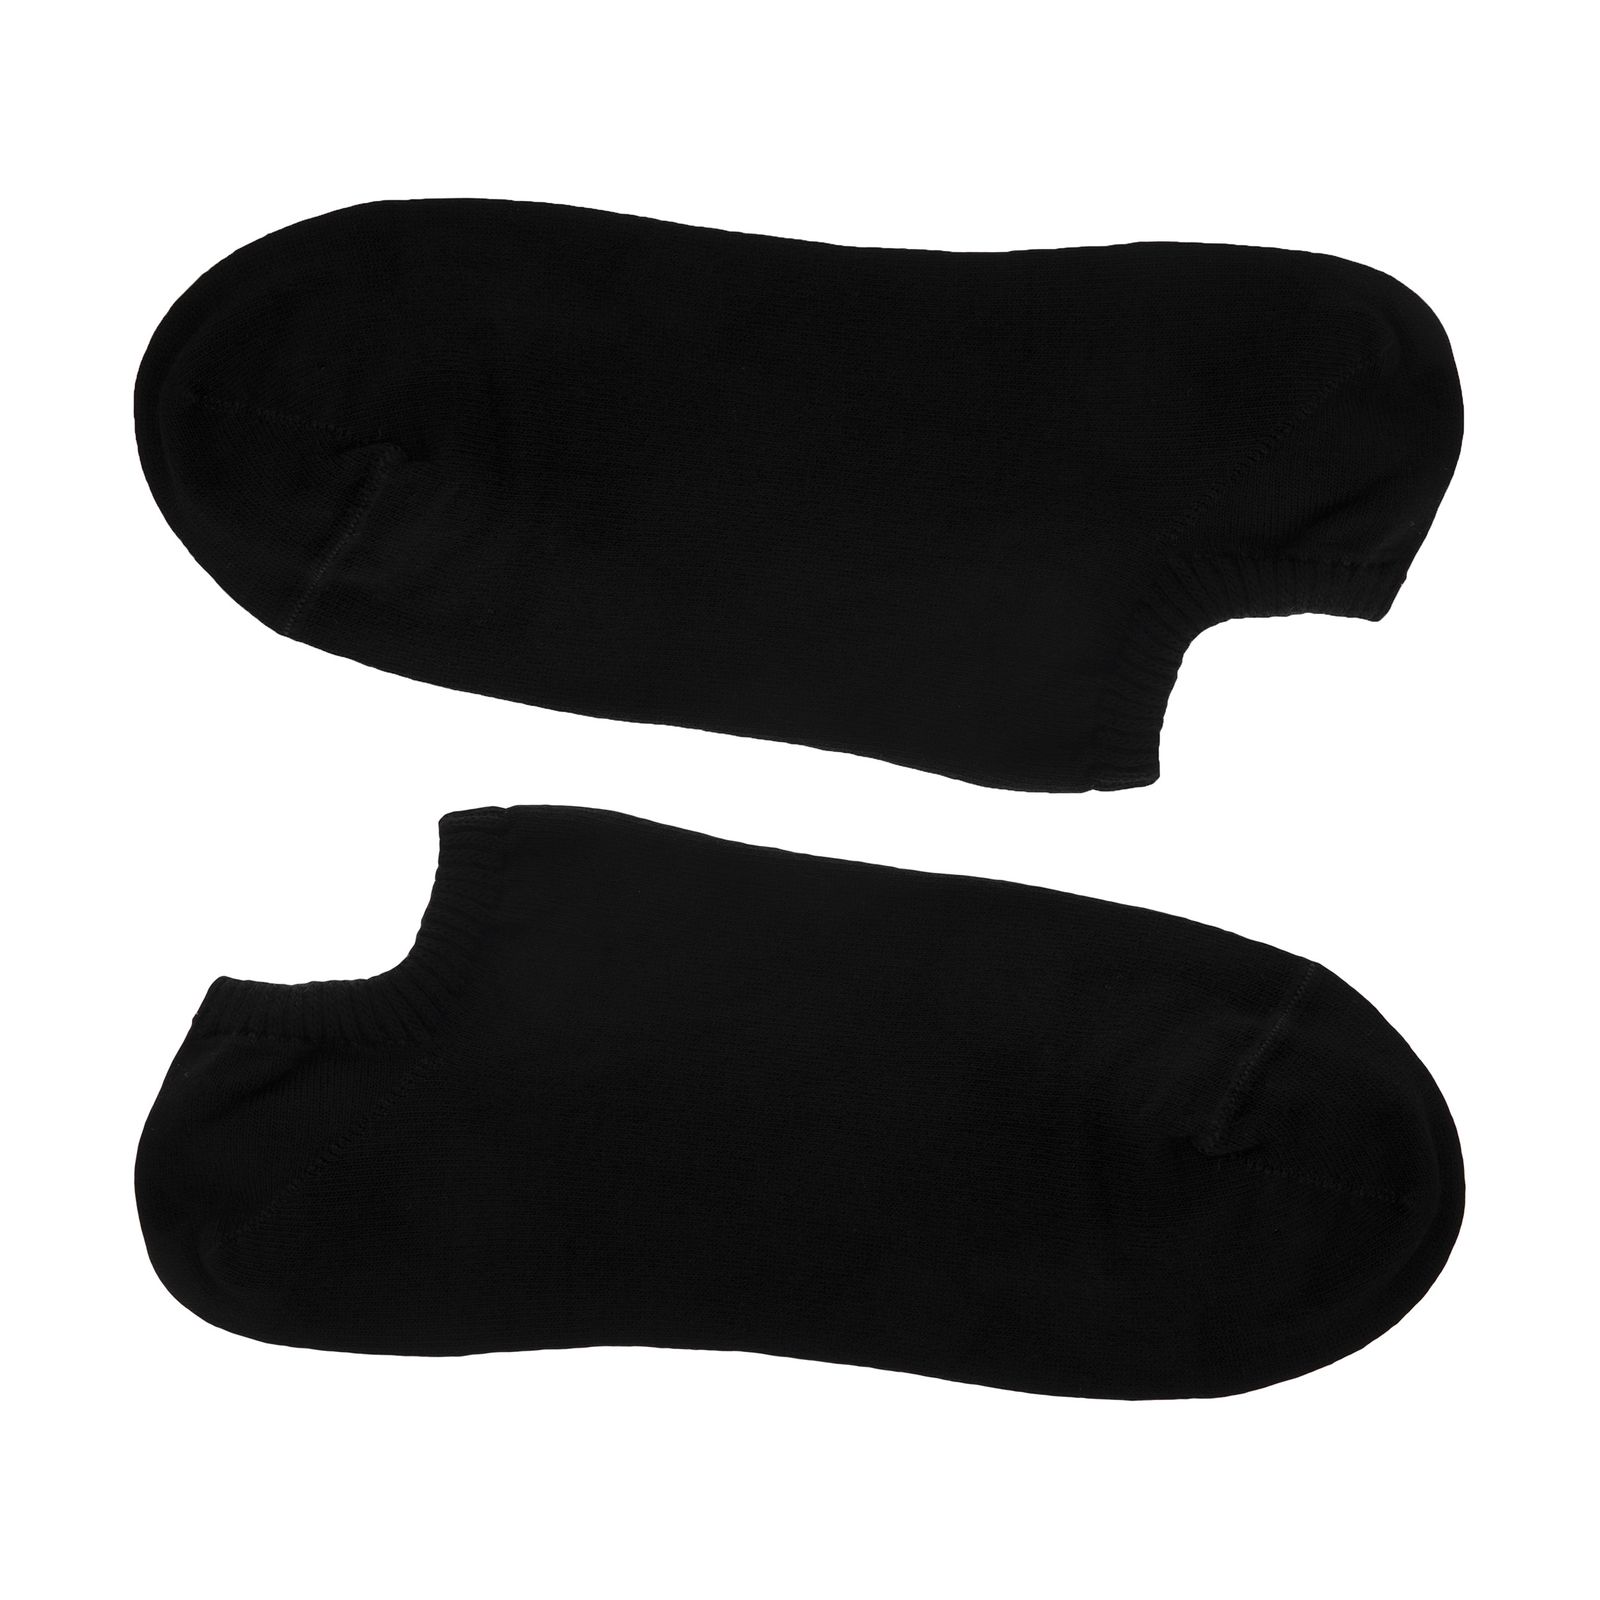 جوراب مردانه شاوین کد 9915-6 -  - 1